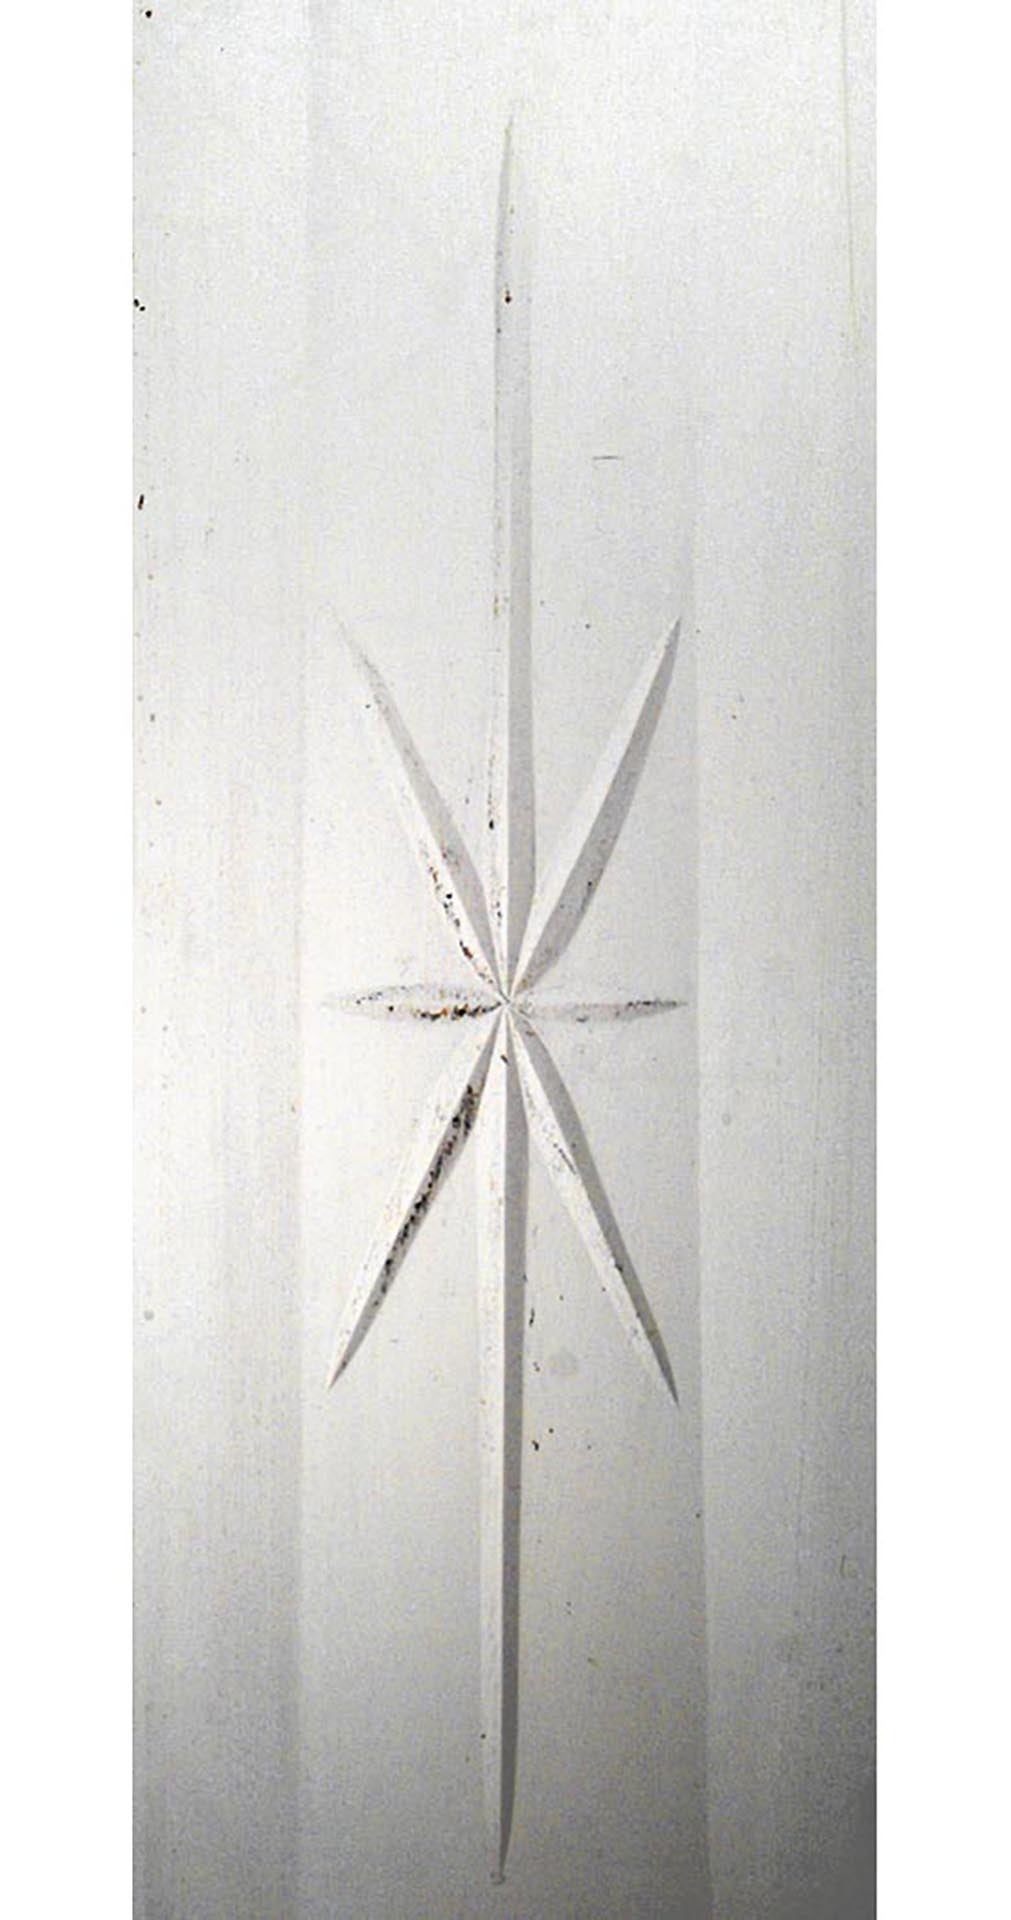 Paire de portes à panneaux en verre biseauté Arts et Métiers anglais, décapées et peintes, avec vitrail sur le dessus et panneaux latéraux triangulaires insérés (PRIX POUR LA Paire).
